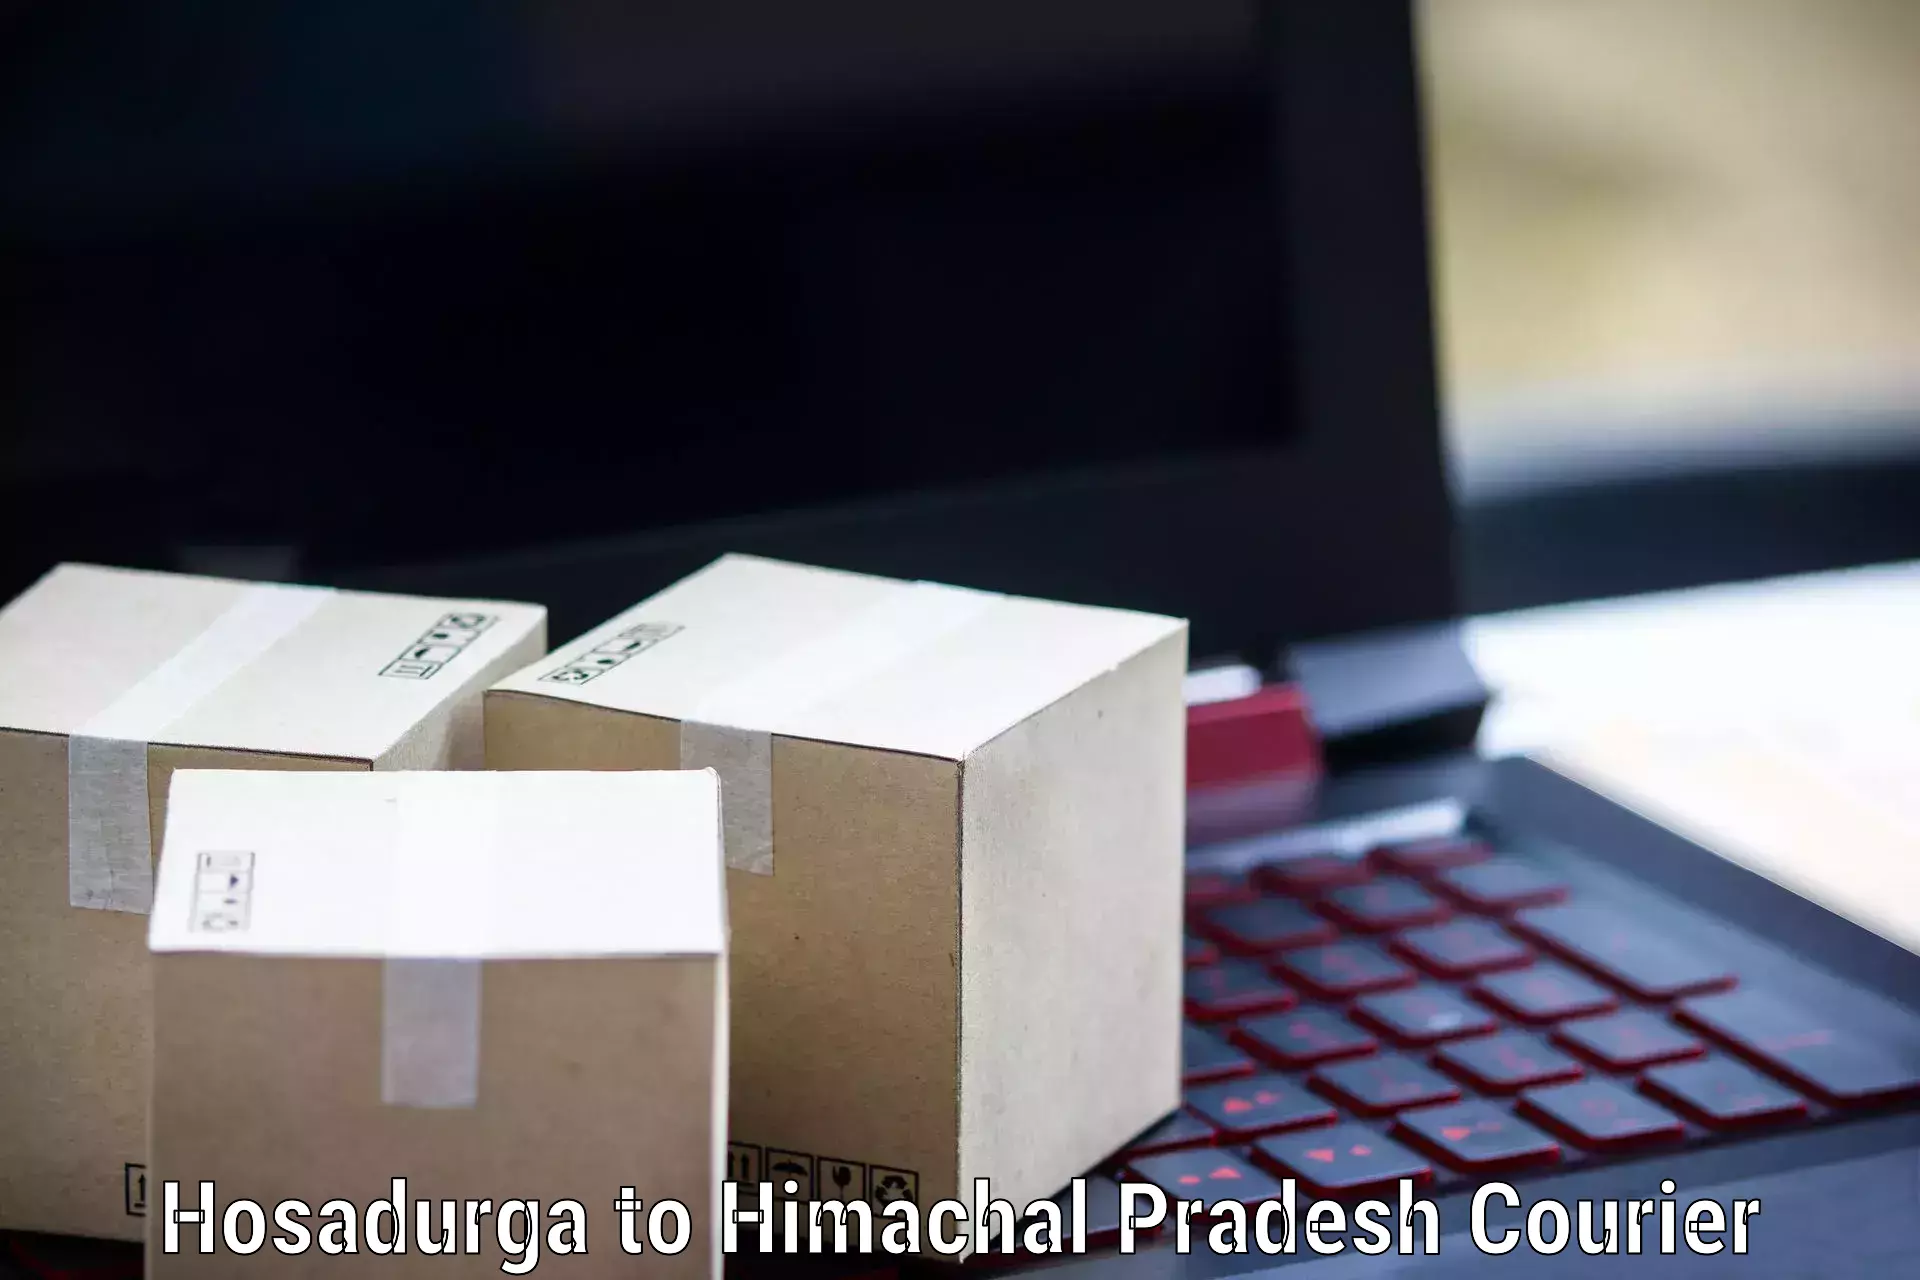 24-hour delivery options Hosadurga to Joginder Nagar